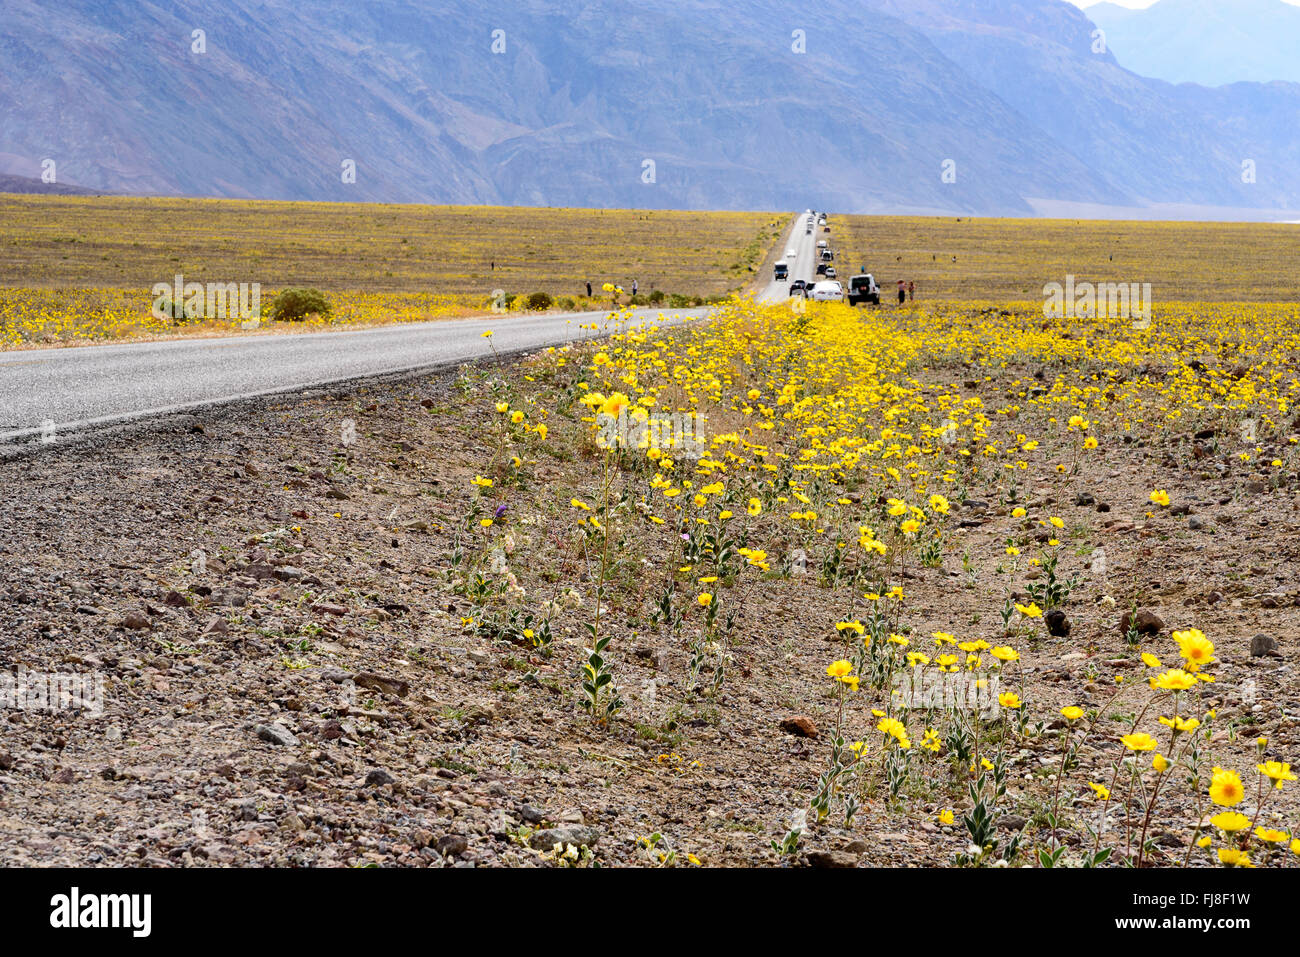 Giallo su strada fiori selvatici nel deserto con la foschia che ricopre le montagne. I campi di fiori selvatici giallo per quanto l'occhio può vedere. Foto Stock